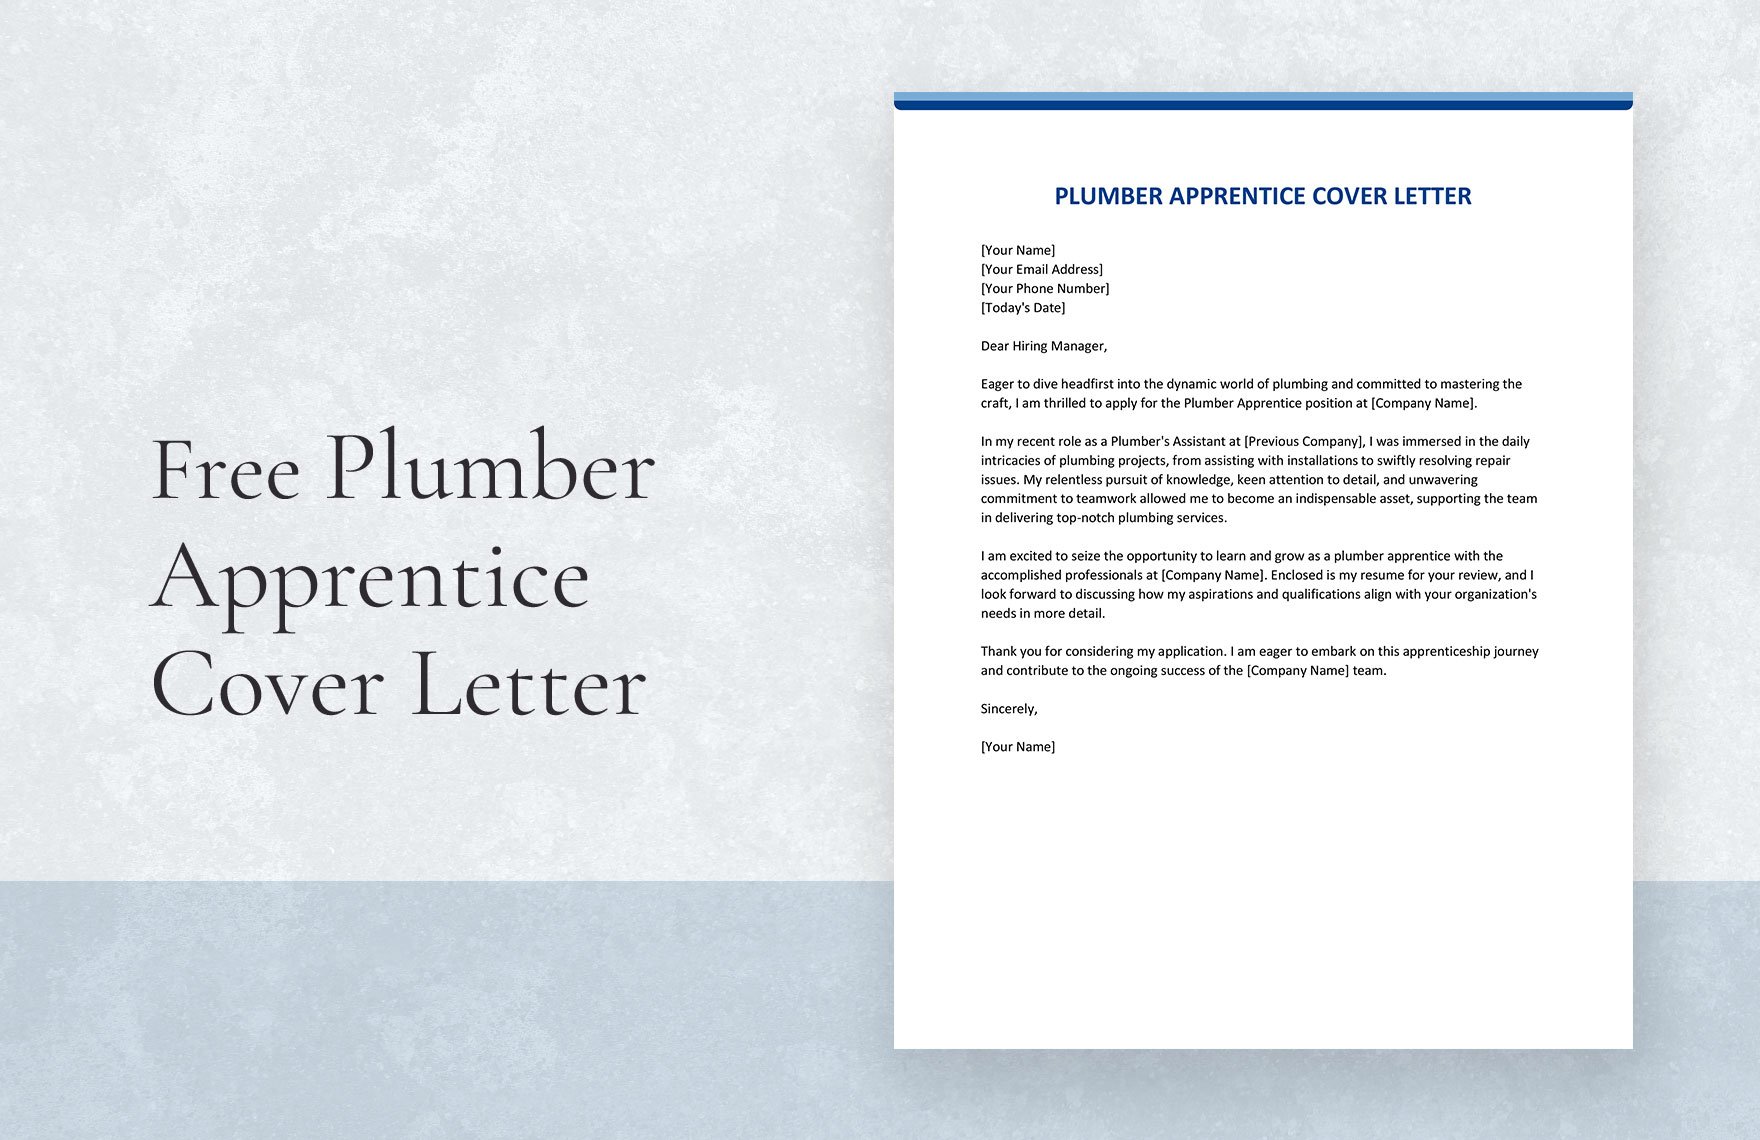 Plumber Apprentice Cover Letter in Word, Google Docs